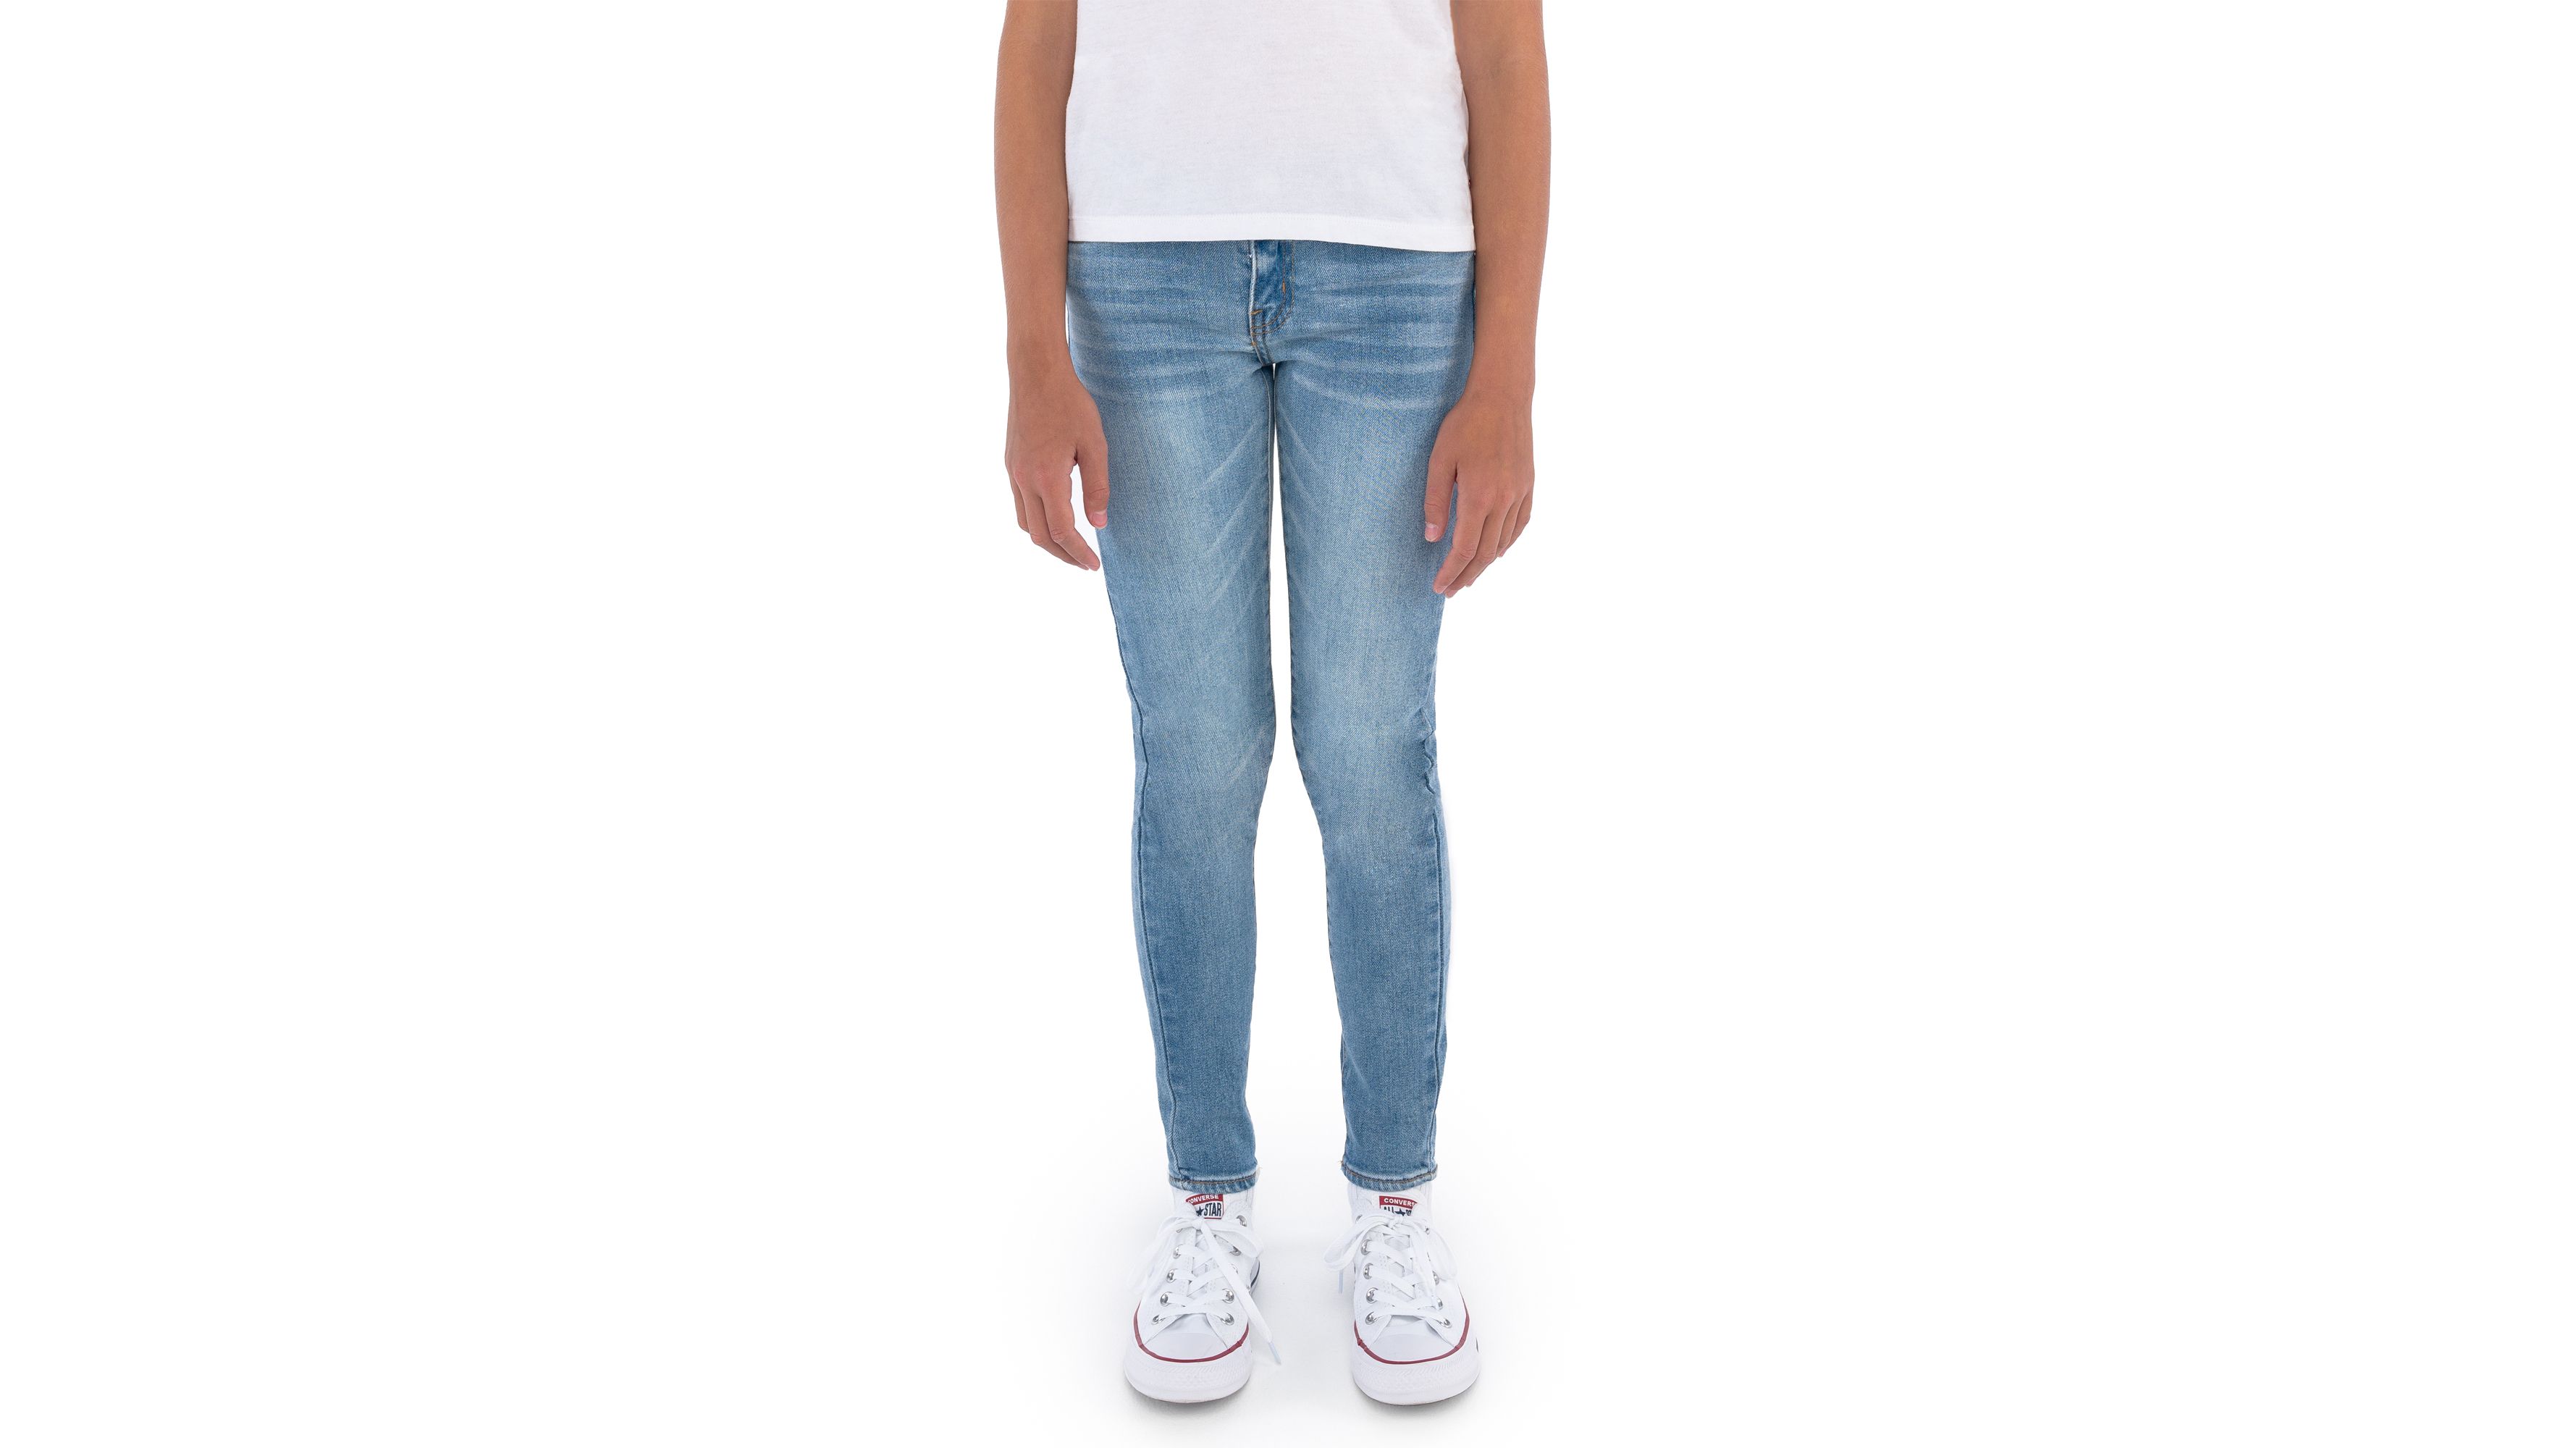 Girls Jeans & Leggings - Shop All Kids Girls' Skinny & More 